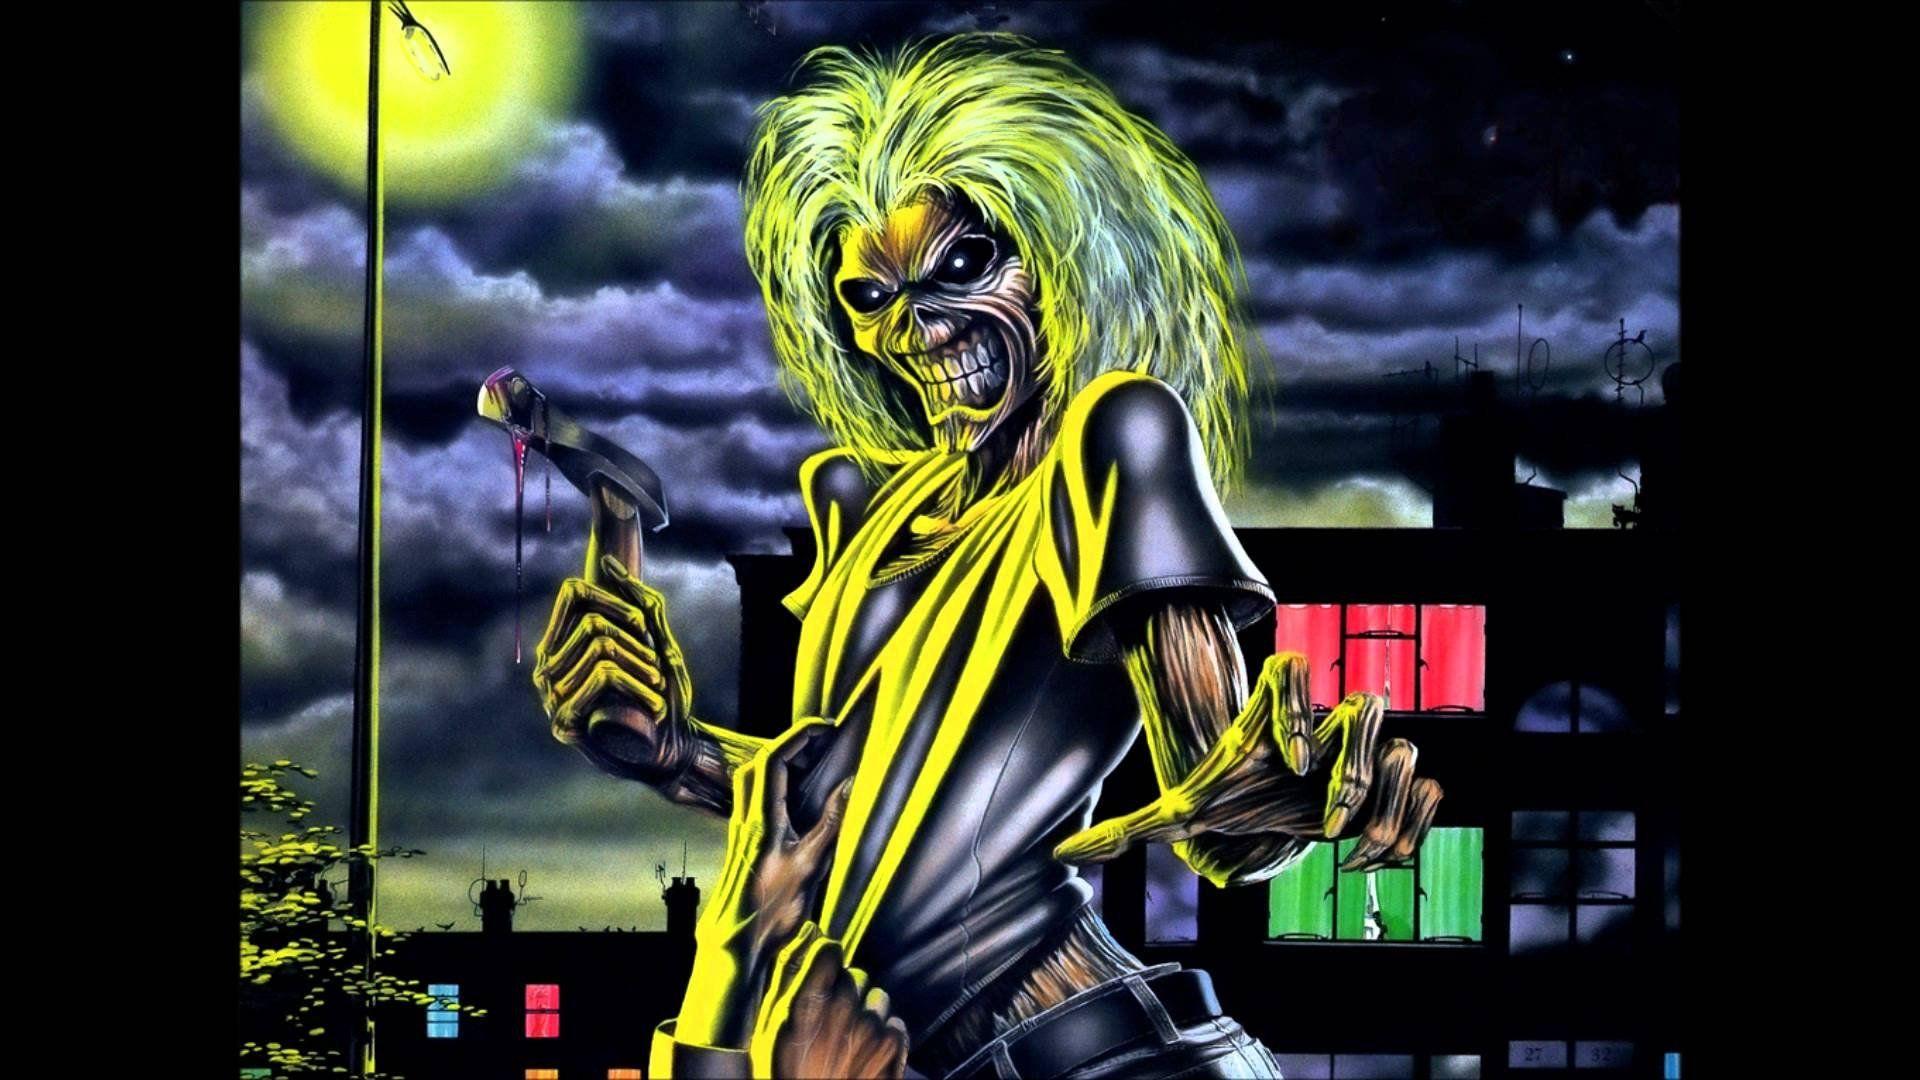 Iron Maiden Eddie Wallpapers - Top Free Iron Maiden Eddie Backgrounds ...